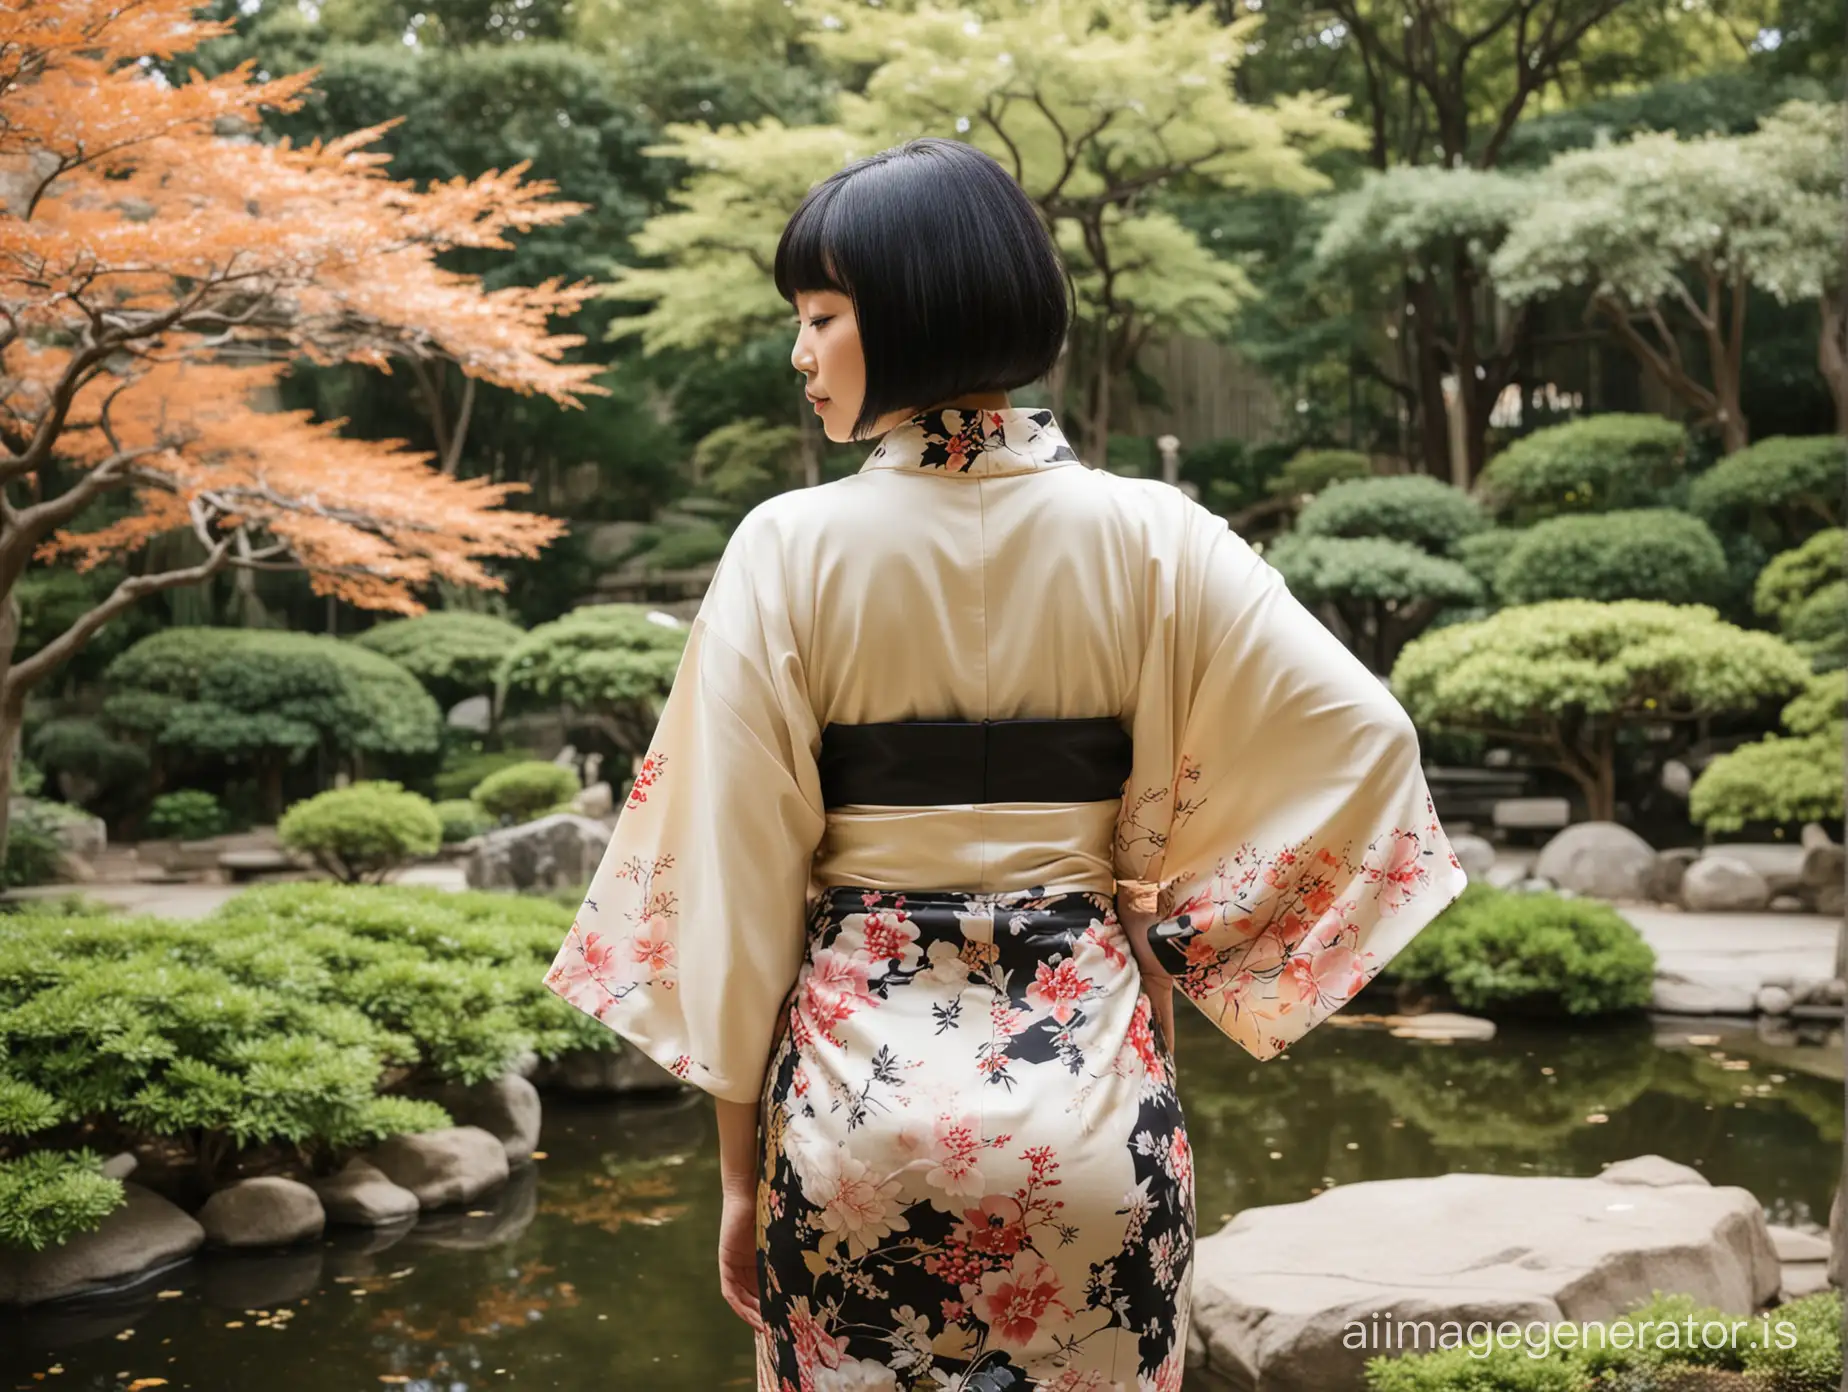 Black bob cut, asian, cream kimono, Japanese garden